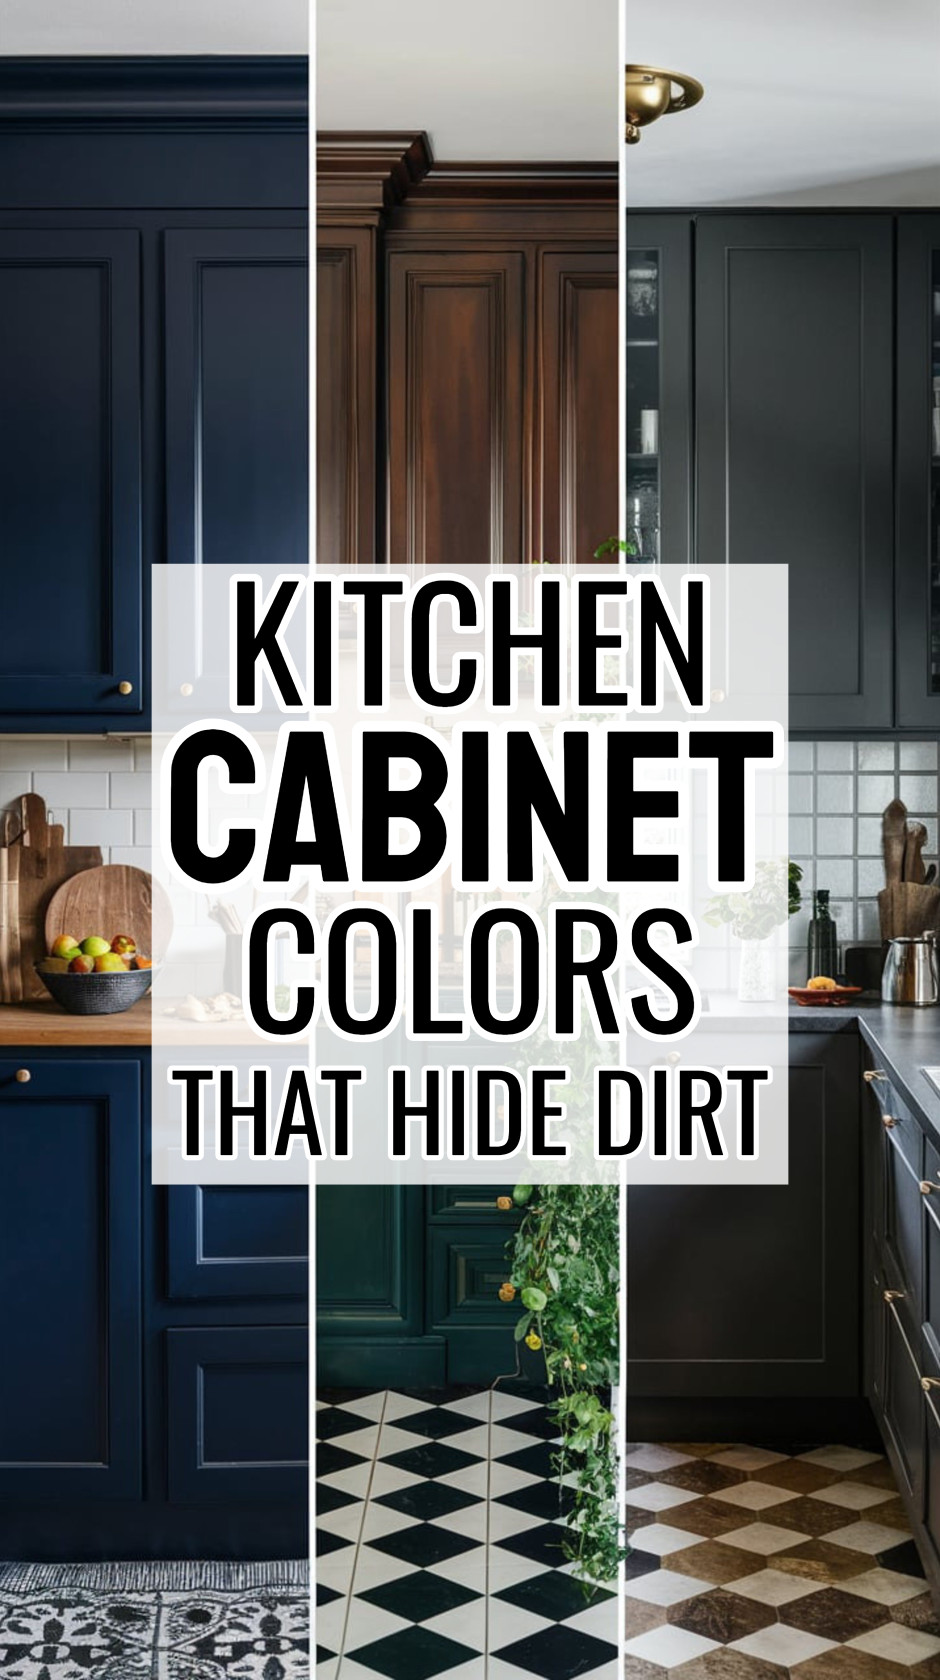 5 kitchen cabinet colors that hide dirt